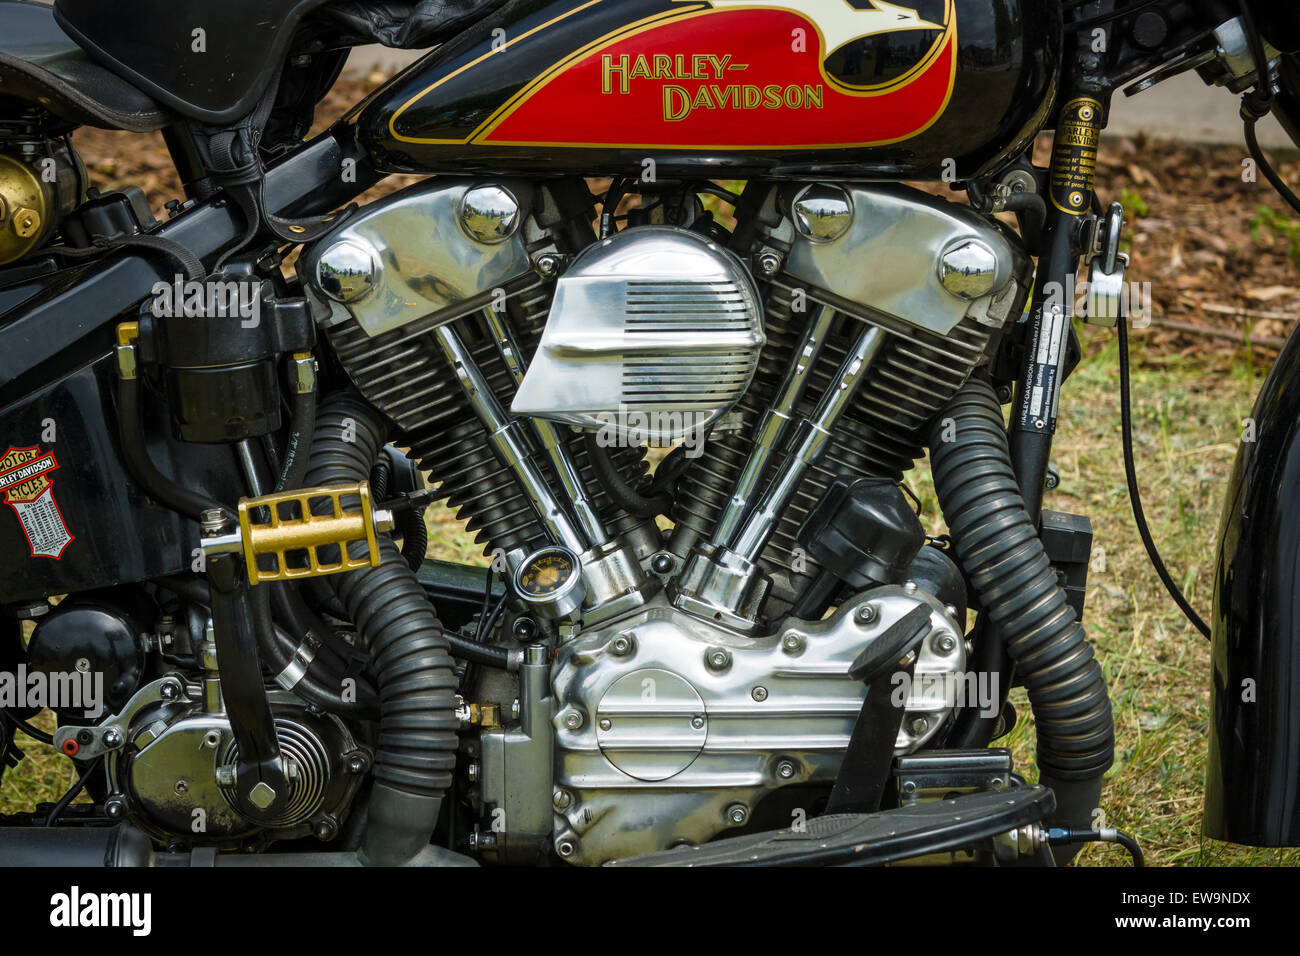 PAAREN IM GLIEN, ALLEMAGNE - le 23 mai 2015 : Fragment d'une moto Harley-Davidson close-up. L'oldtimer show à MAFZ. Banque D'Images